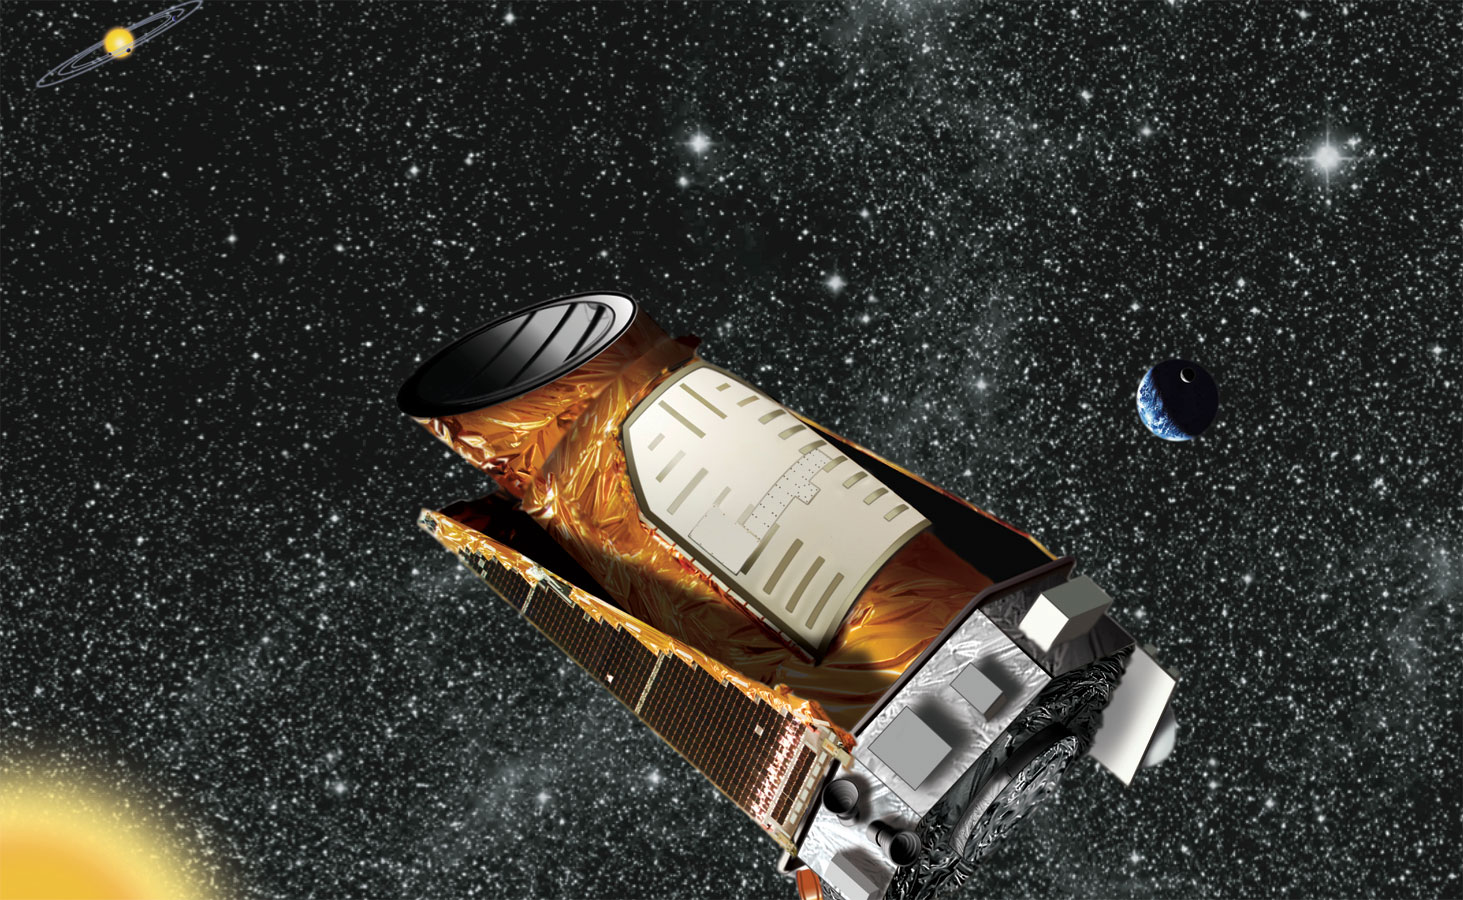 [Artist impression of Kepler spacecraft with distant solar system.   Credit NASA/Kepler mission/Wendy Stenzel ]